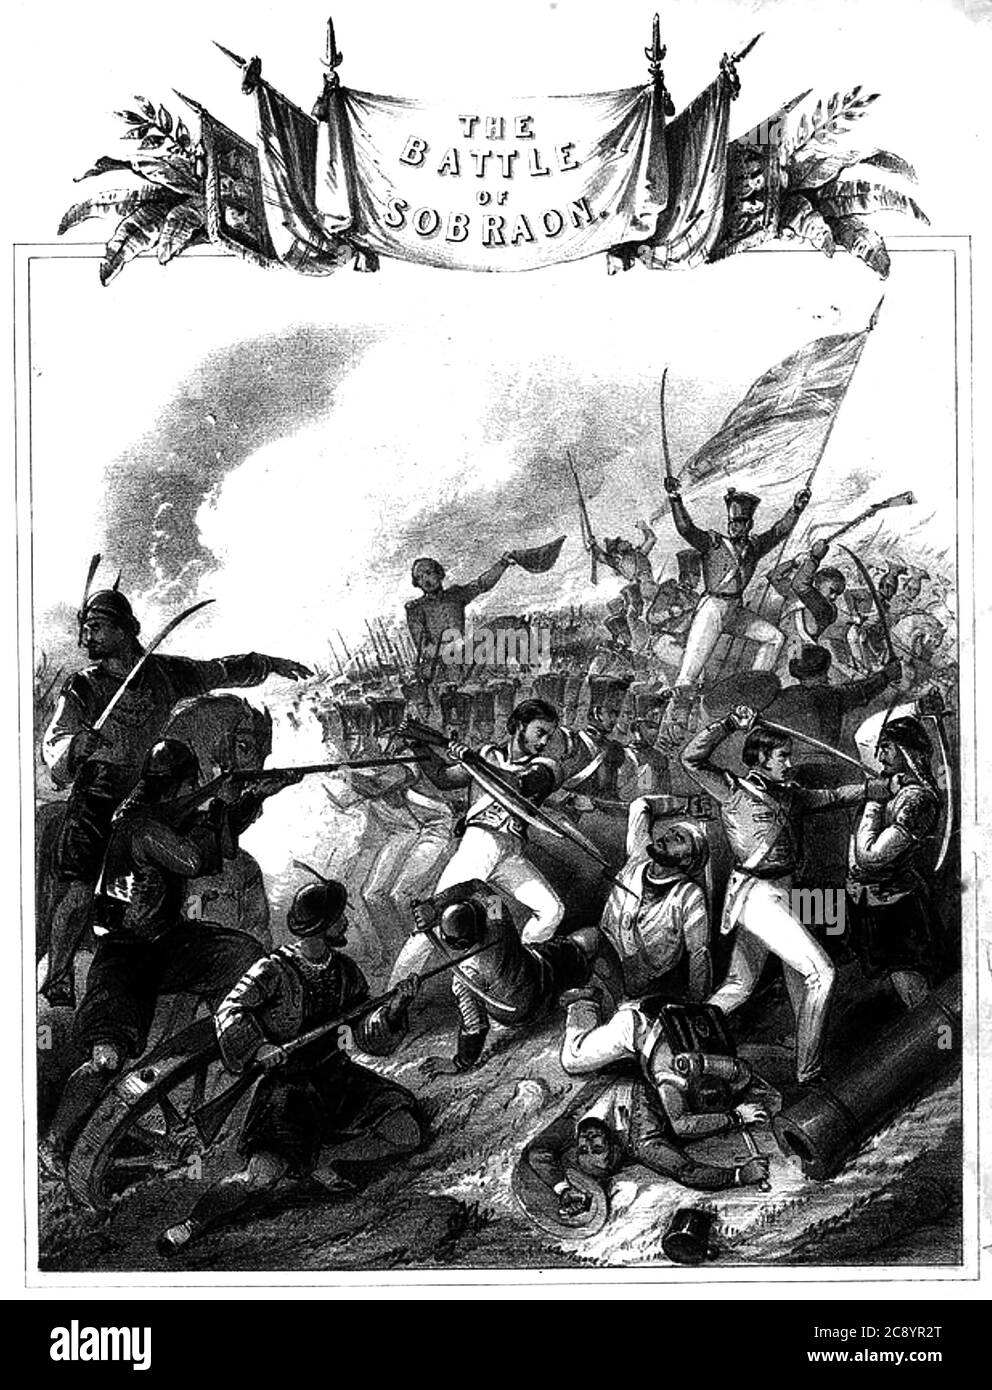 BATTAGLIA di SOBRAON 10 Febbraio 1846 tra i soldati della Compagnia delle Indie Orientali e l'esercito dell'Impero Sikh del Punjab. Copertina di spartiti di piano per celebrare l'evento. Foto Stock